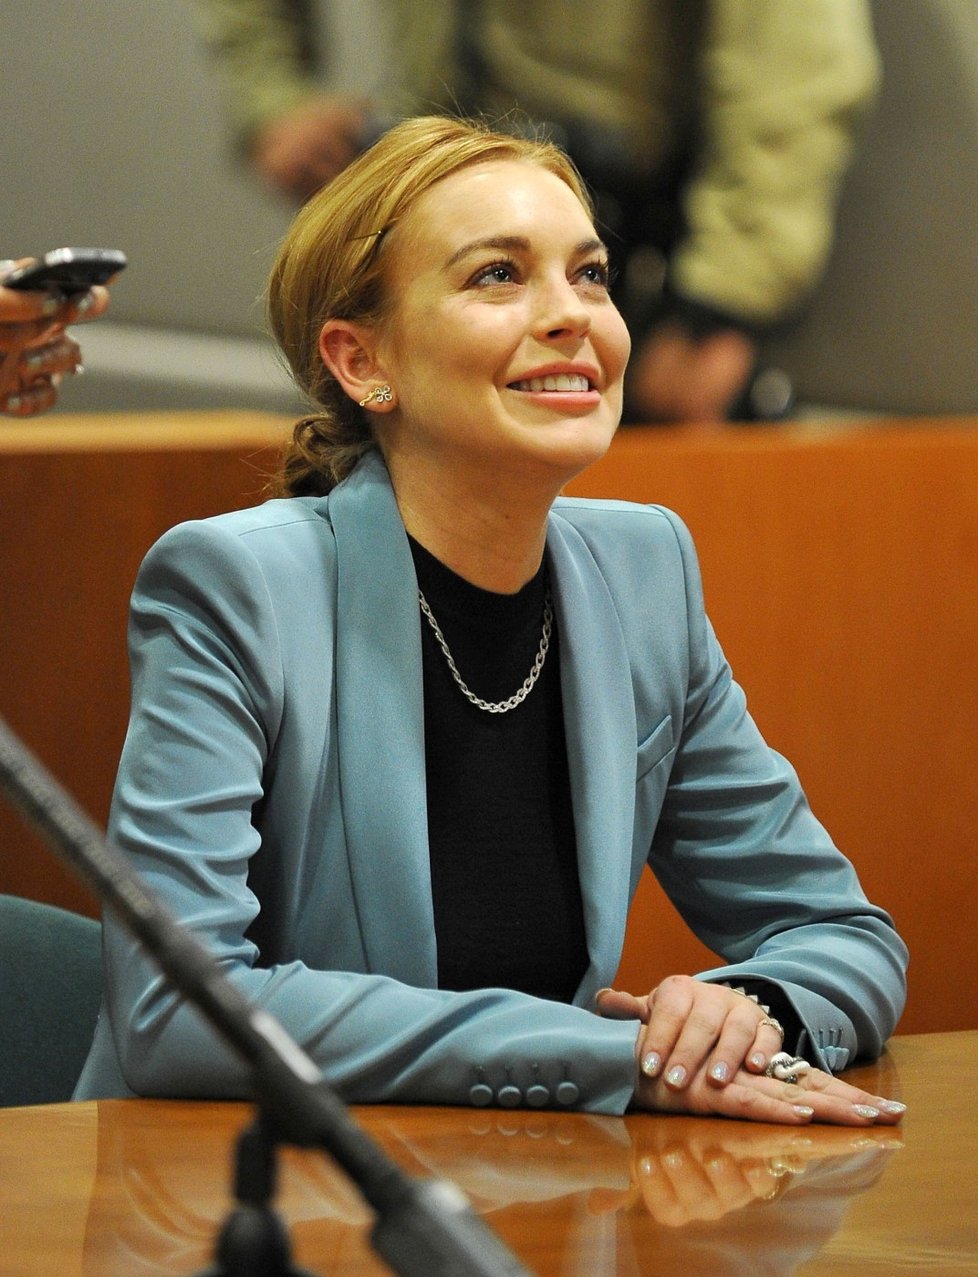 Lindsay Lohan neskrývala před soudem svou radost